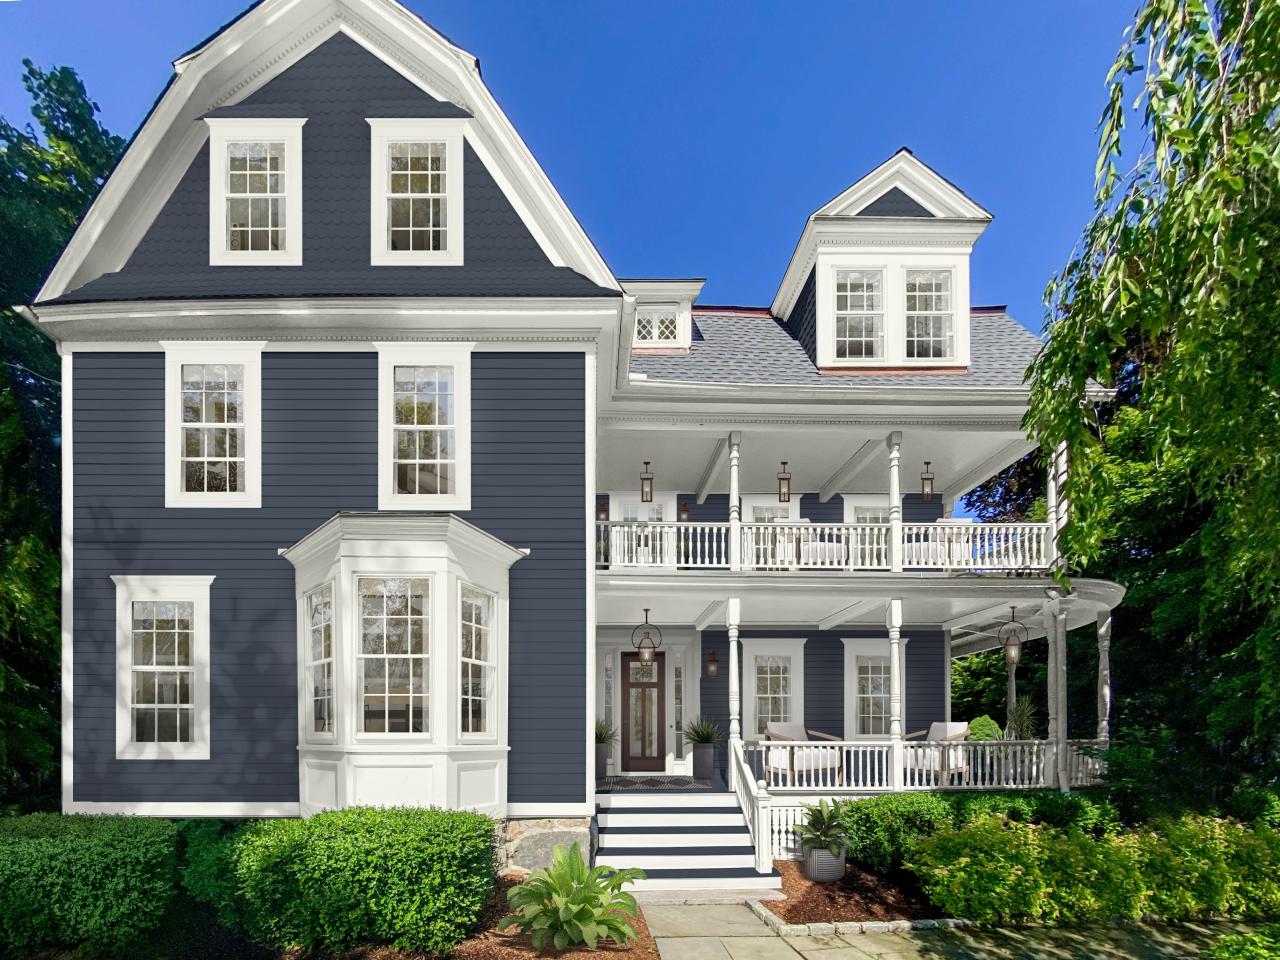 12 Blue Exterior House Colors We Love - Brick&Batten